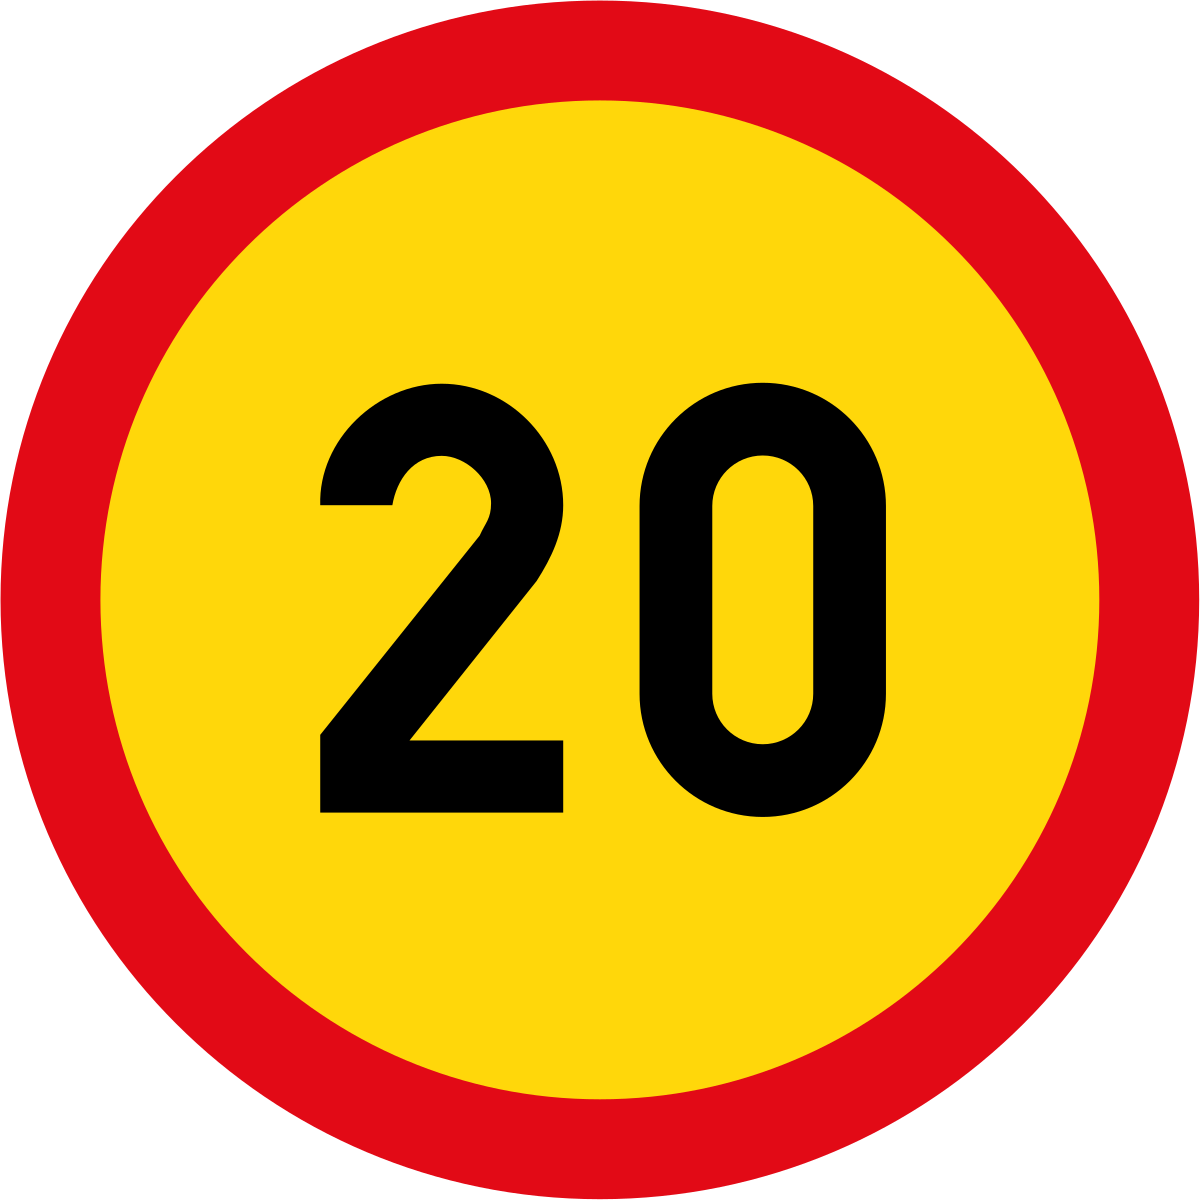 24 3 20. Дорожный знак ограничение скорости 20 км. 3.24 «Ограничение максимальной скорости» 20. Знак 3.24 ограничение максимальной скорости 20. Дорожный знак 3.24 20 на желтом фоне.